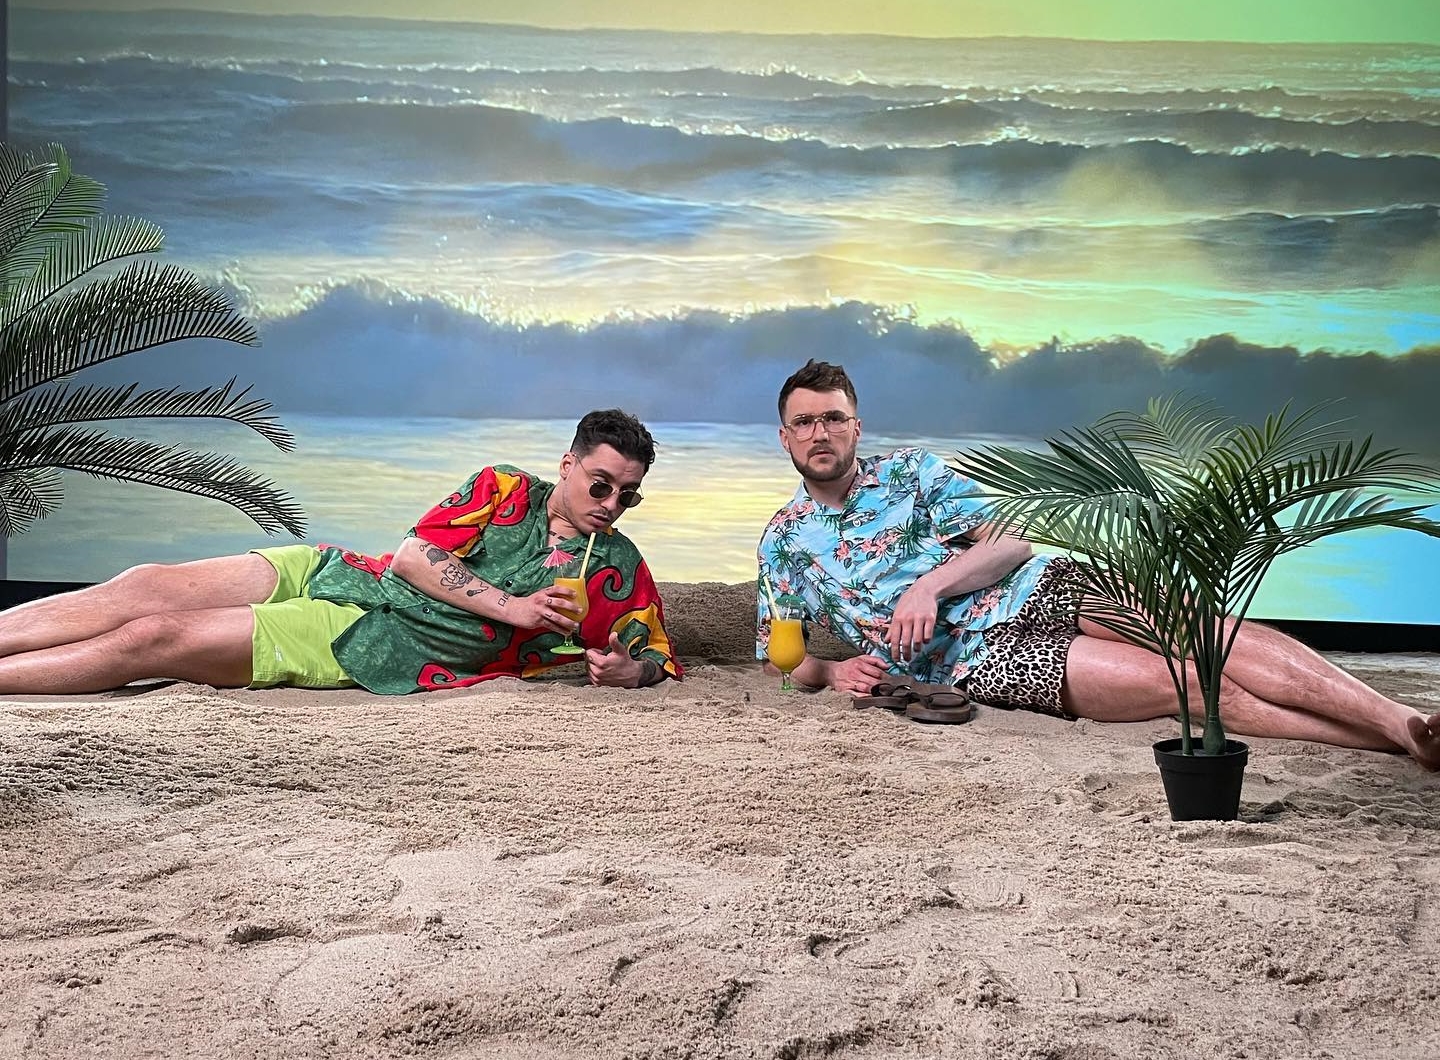 HOT NEWS! MiłyPan i Defis łączą siły w nowym singlu 'Madagaskar'. Czy to najbardziej wyczekiwana piosenka roku? Zobacz VIDEO